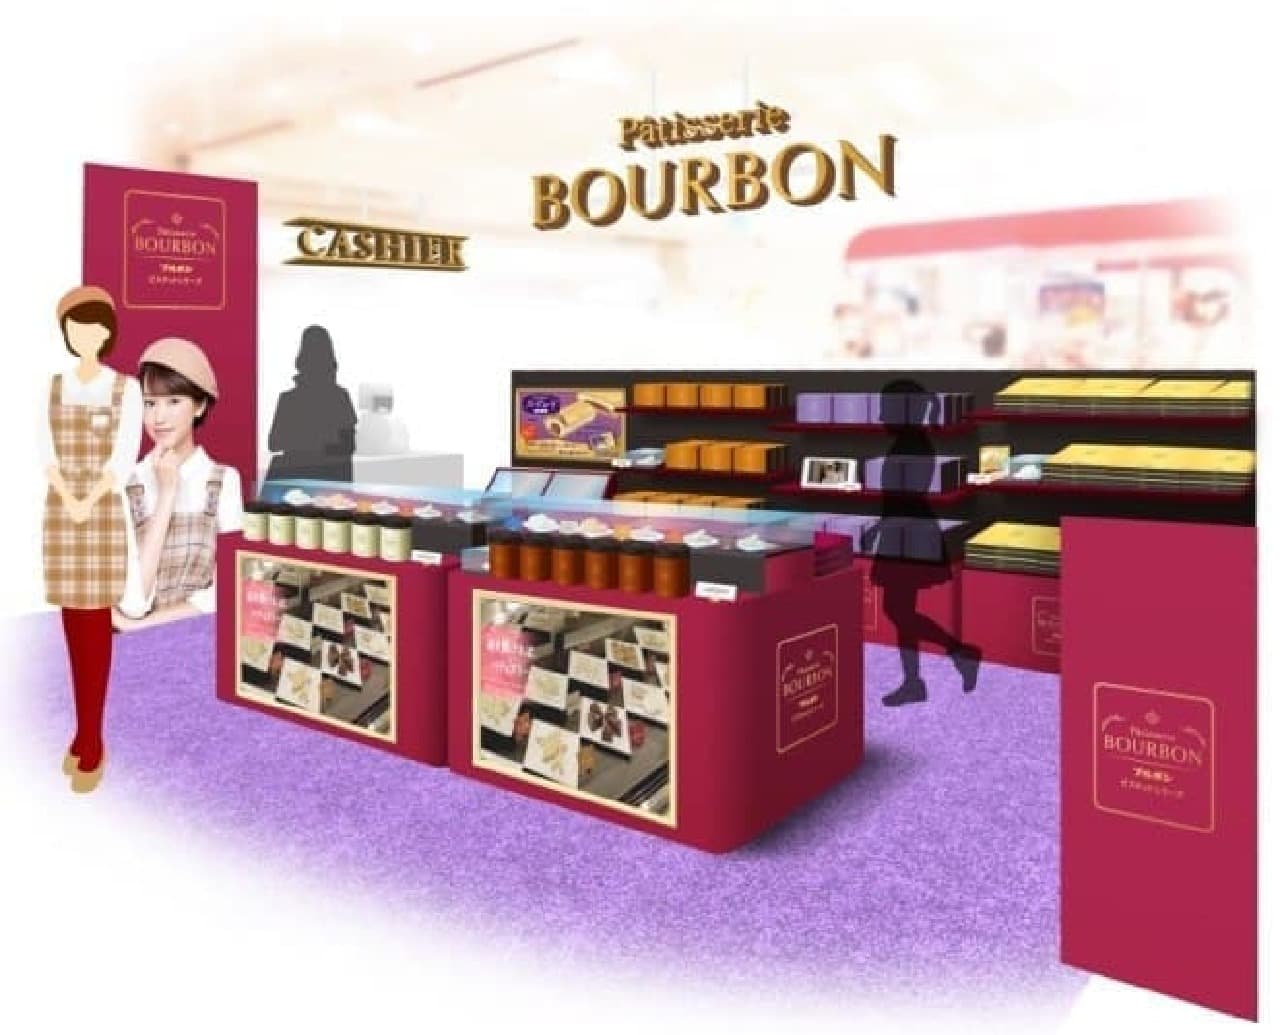 Bourbon's first antenna shop "Patisserie Bourbon"